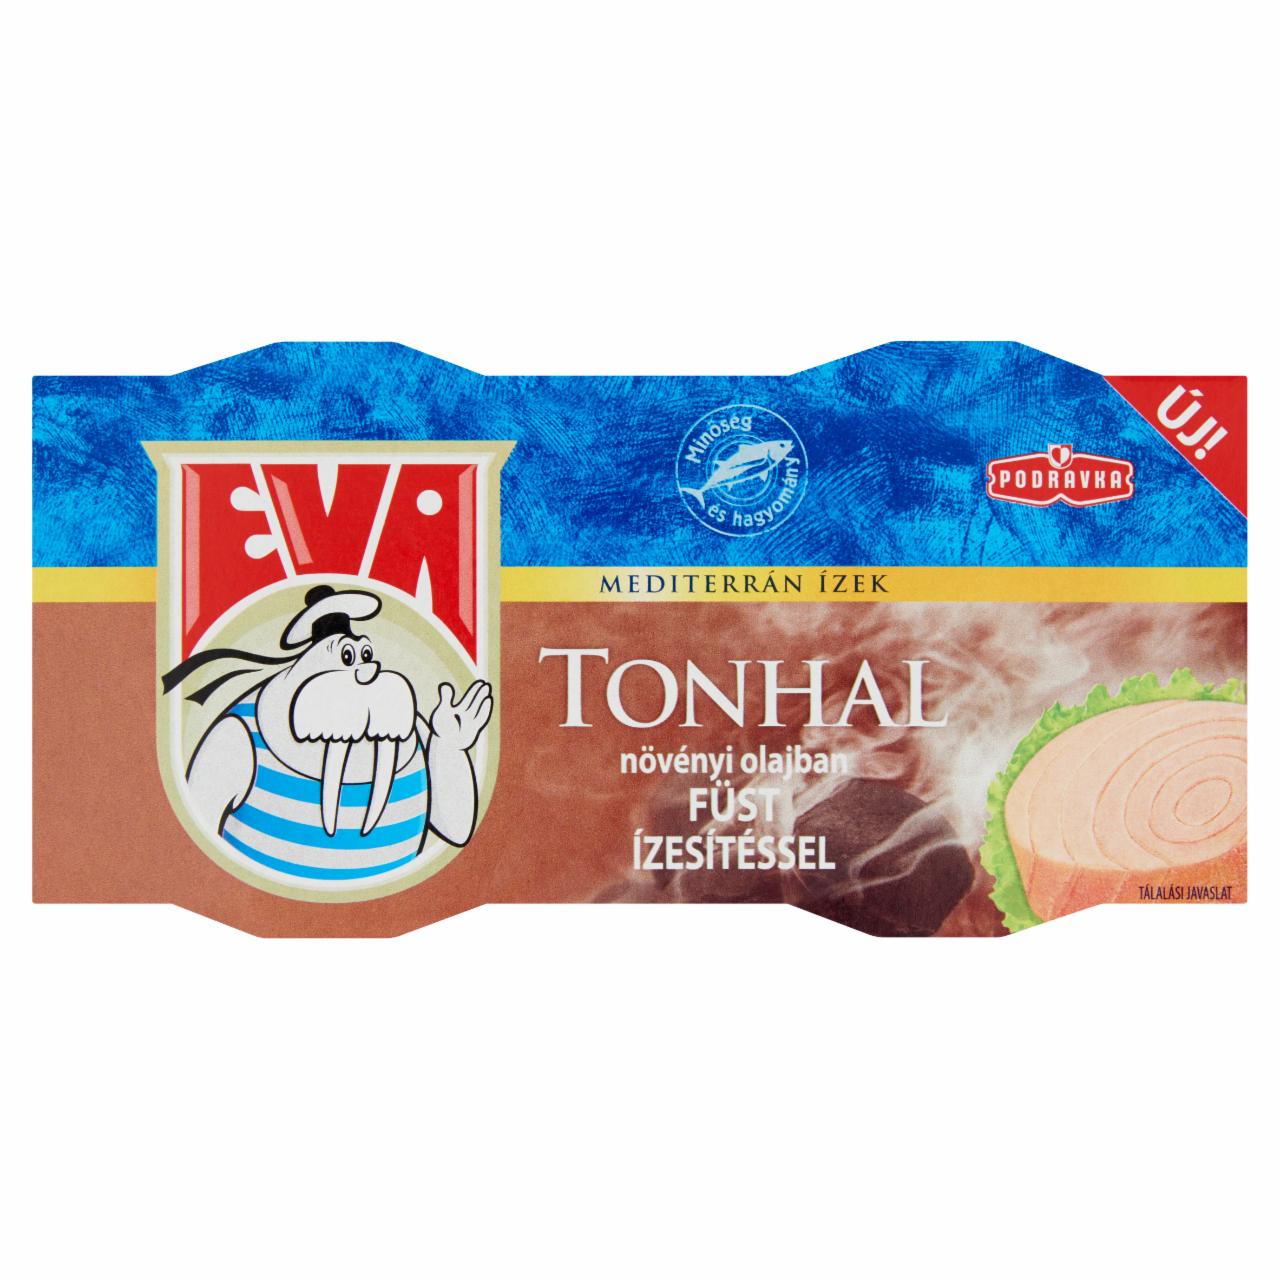 Képek - Podravka Eva tonhal növényi olajban füst ízesítéssel 2 x 80 g